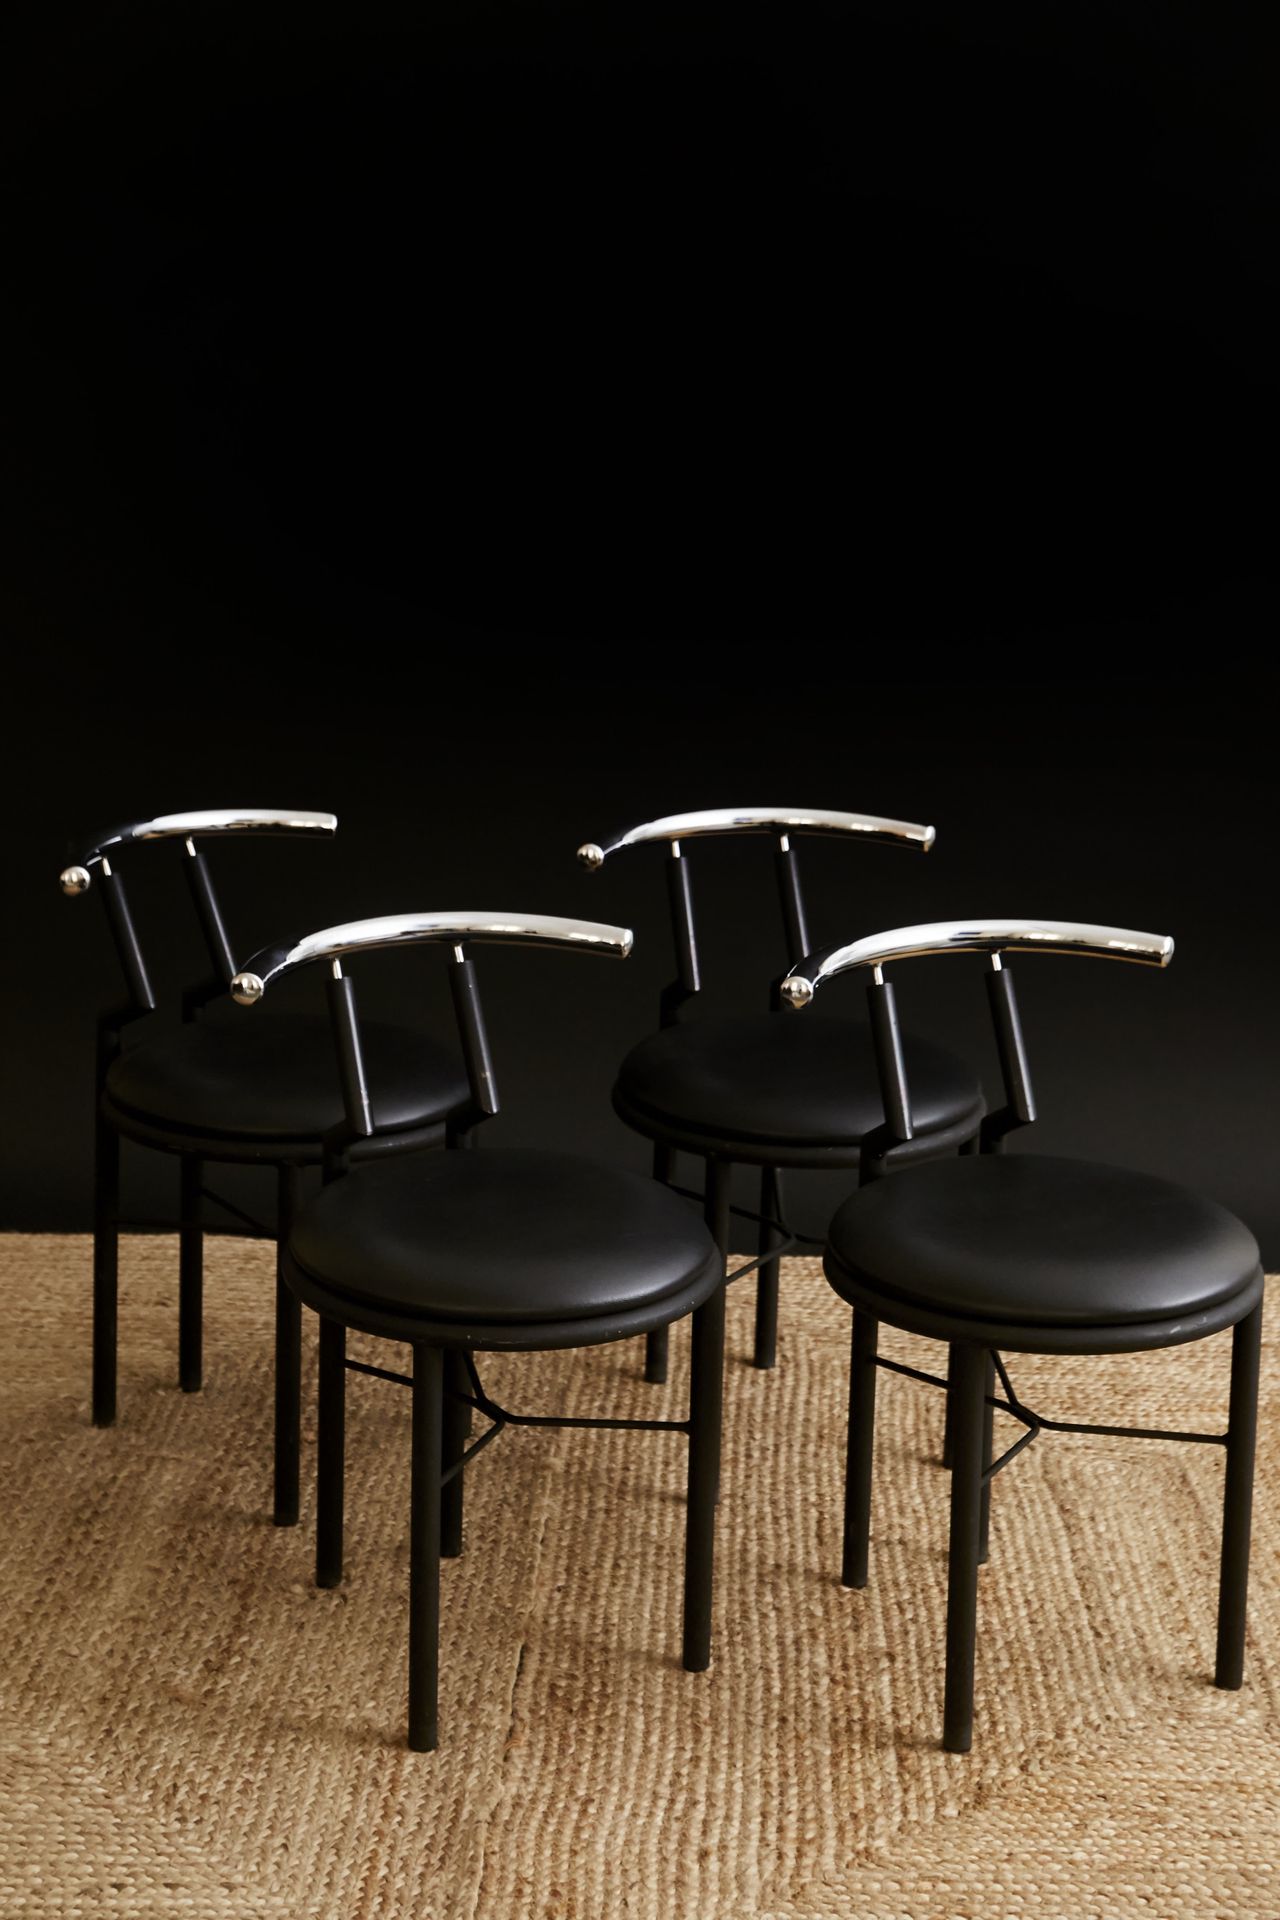 TRAVAIL JAPONAIS Suite de quatre chaises•••»•••
Métal laqué, métal chromé et cui&hellip;